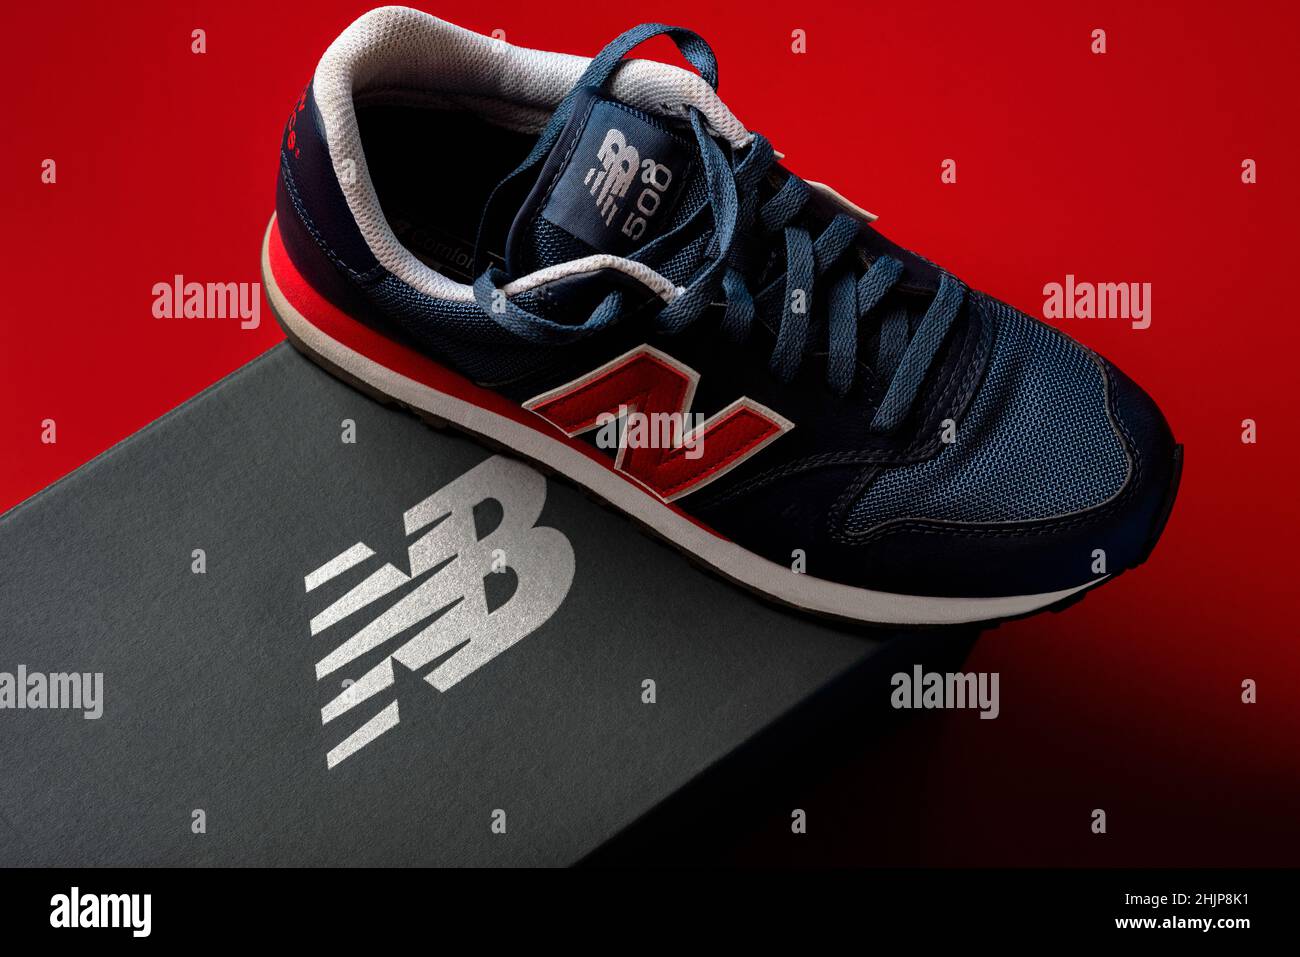 Nouvelles sneakers Balance 500 bleu foncé avec la boîte grise New Balance sur fond rouge.Chaussures de sport décontractées à gros plan Banque D'Images